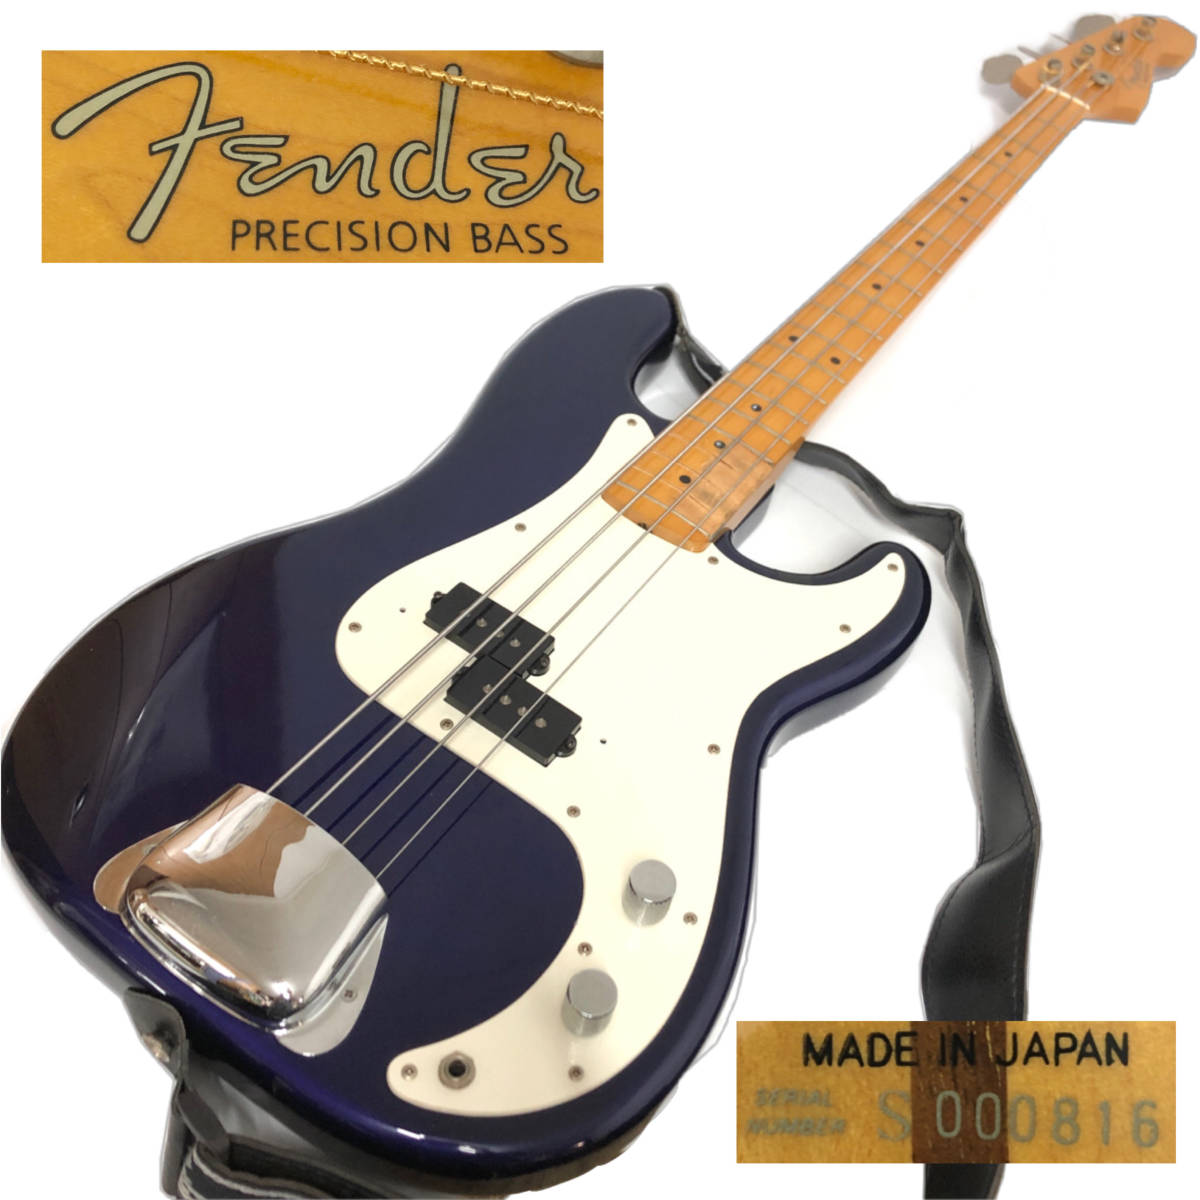 送料無料でお届けします おすすめ KT1 92 ジャンク Fender Japan Precision Bass ベース 1994〜1995年 シリアル S000816 フェンダー プレシジョンベース フジゲン製 4弦 ittj.akademitelkom.ac.id ittj.akademitelkom.ac.id